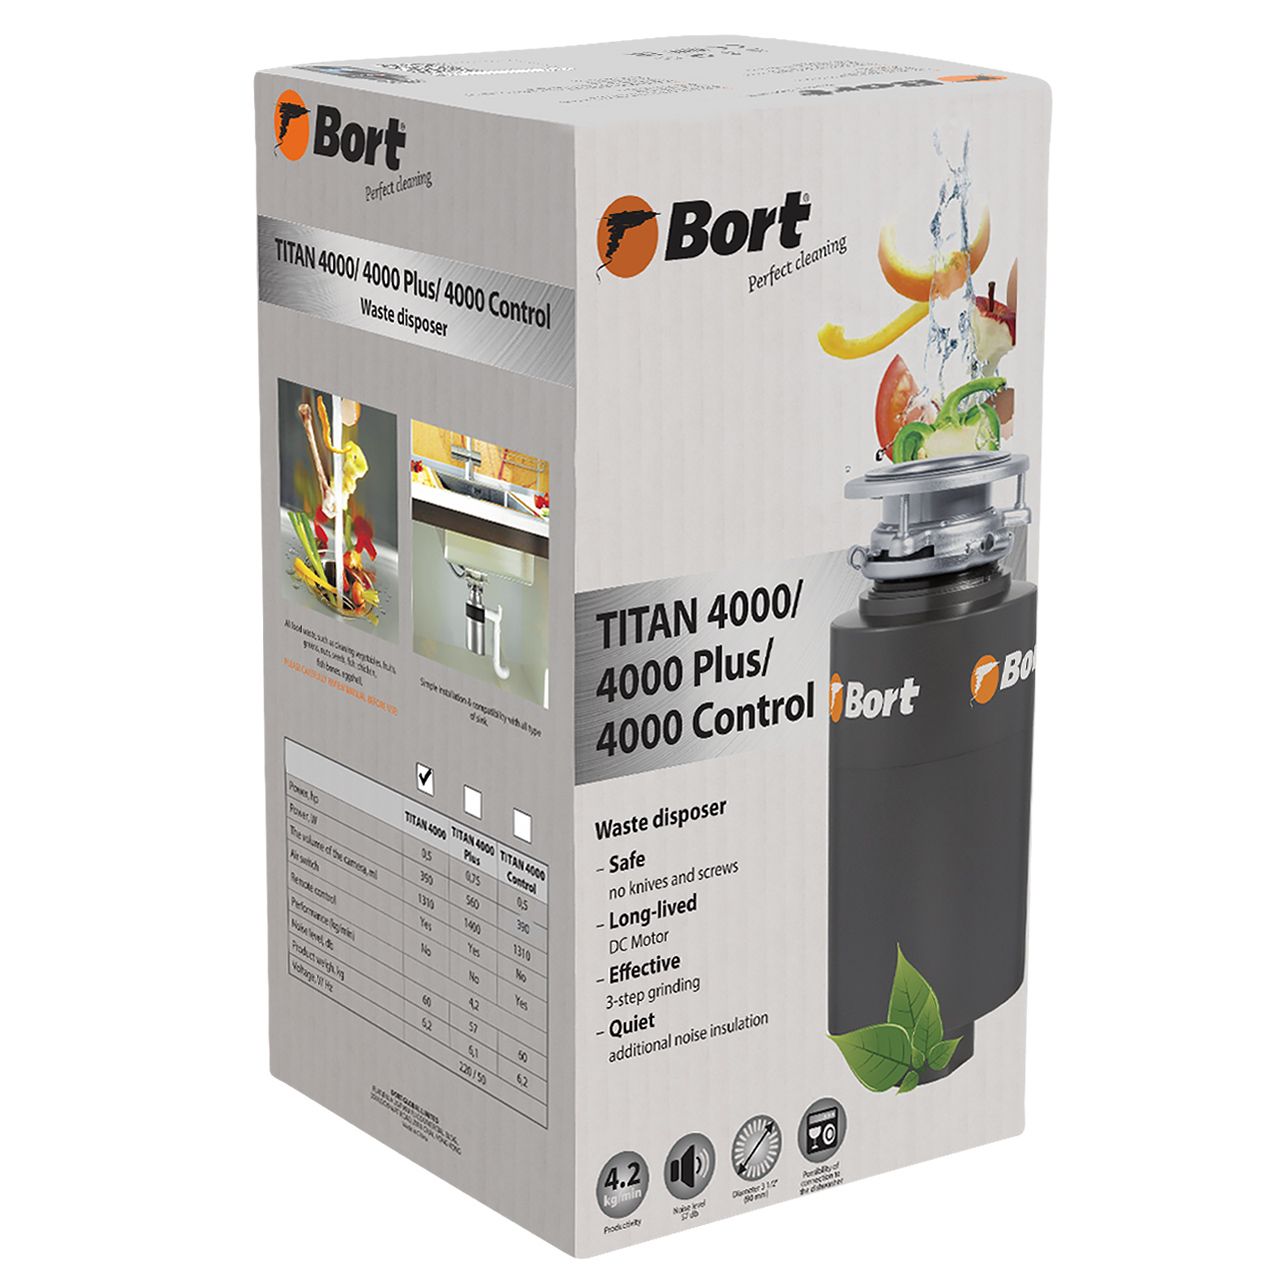  Измельчитель бытовых отходов Bort TITAN 4000 в онлайн-маркете .